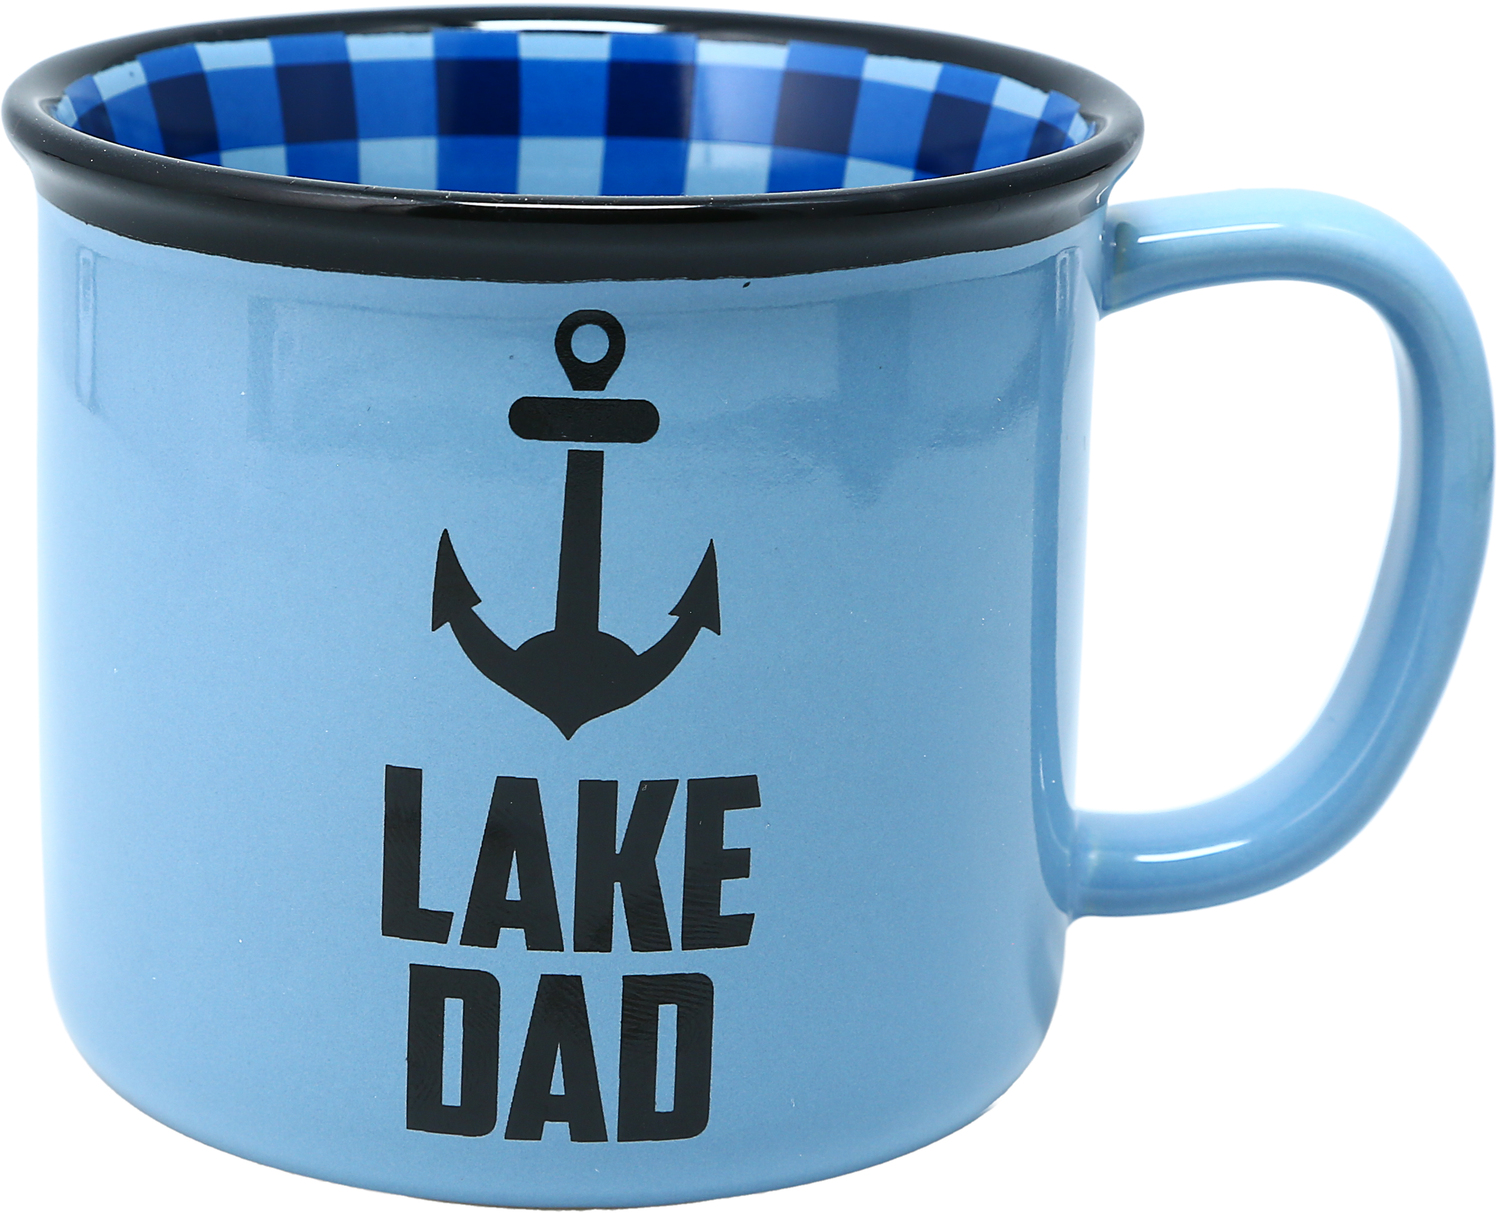 Lake Dad by Man Out - Lake Dad - 18 oz Mug